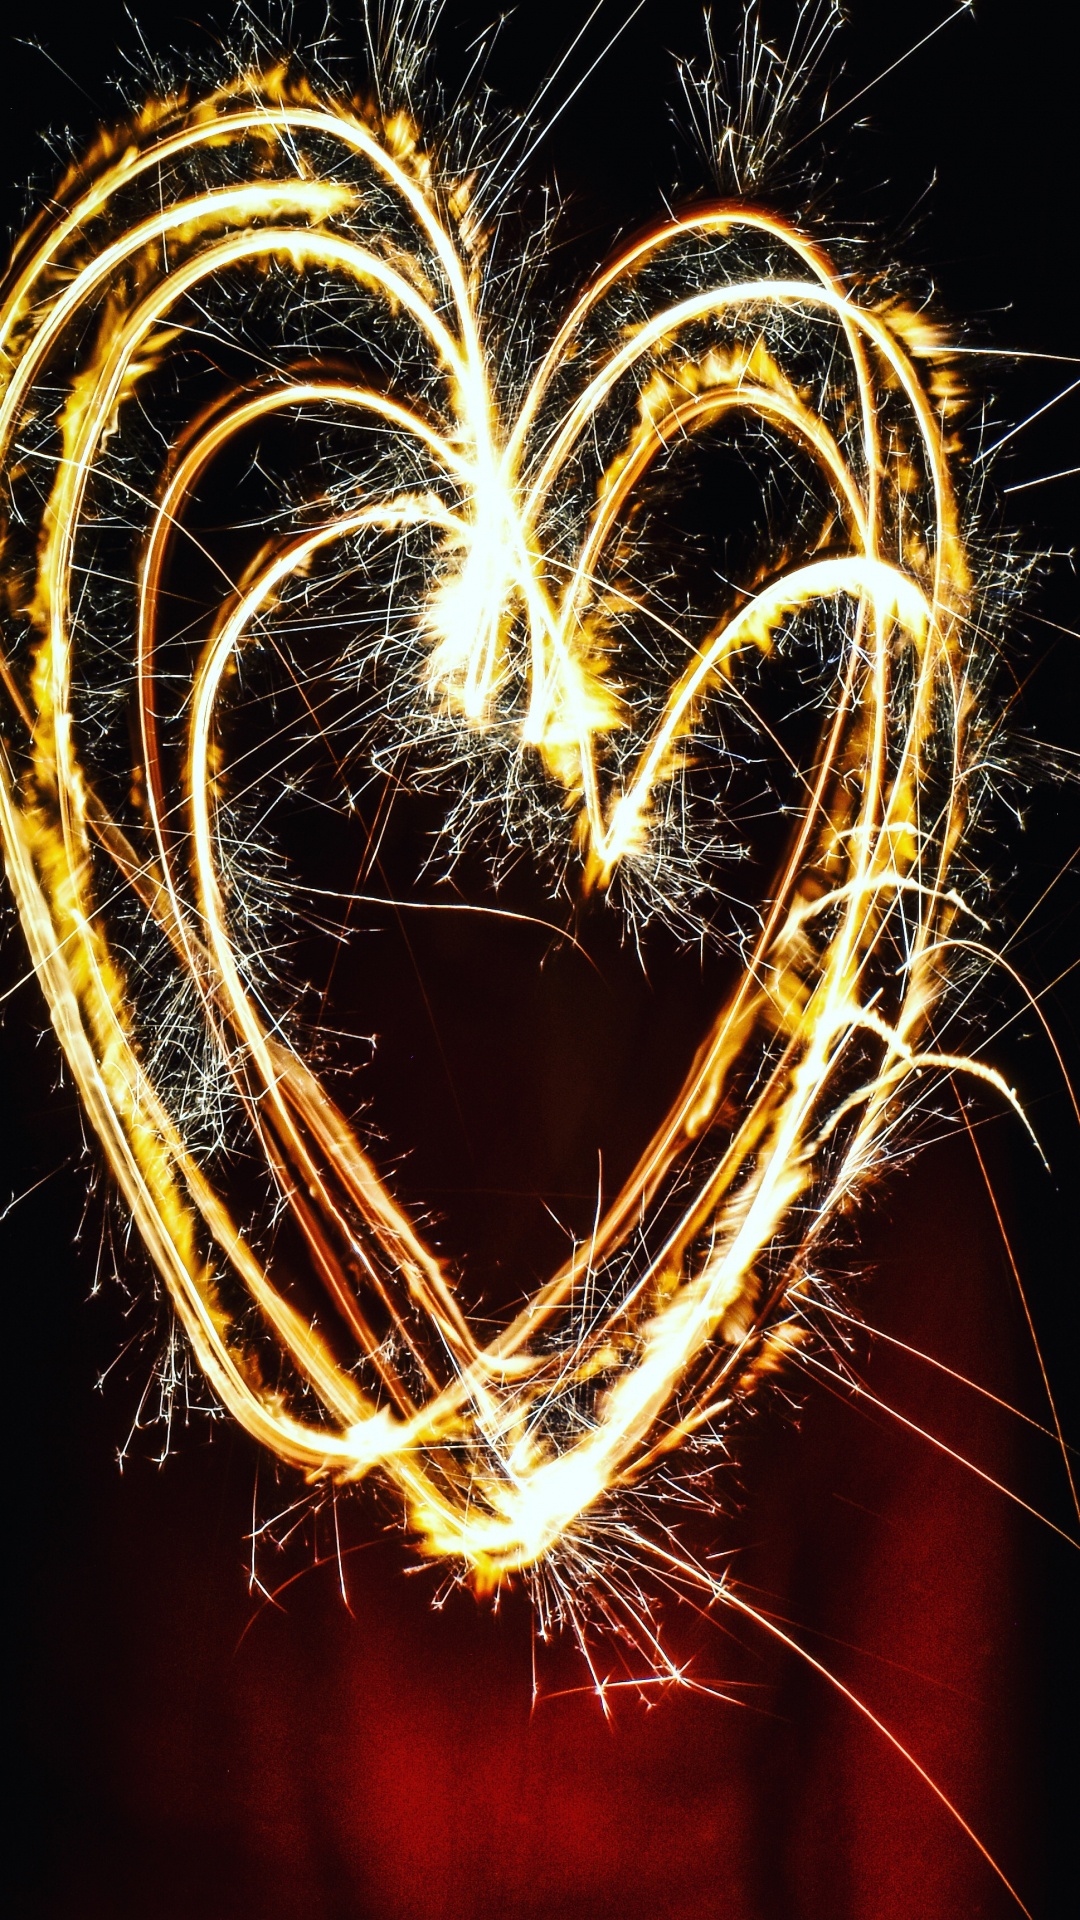 烟火, 烟花, 心脏, 光, 爱情 壁纸 1080x1920 允许